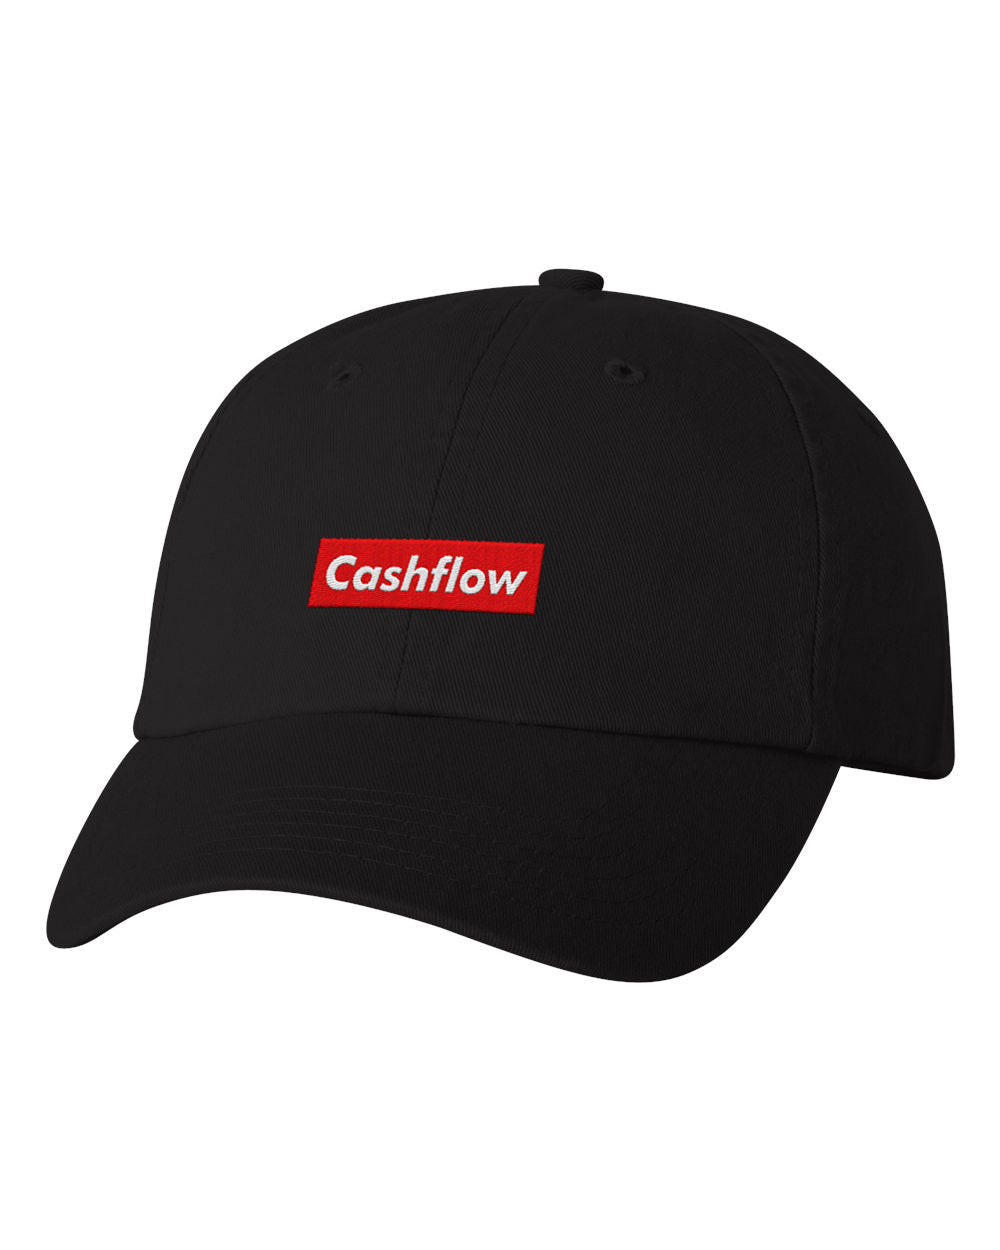 Cashflow Embroidered Dad Cap- Black